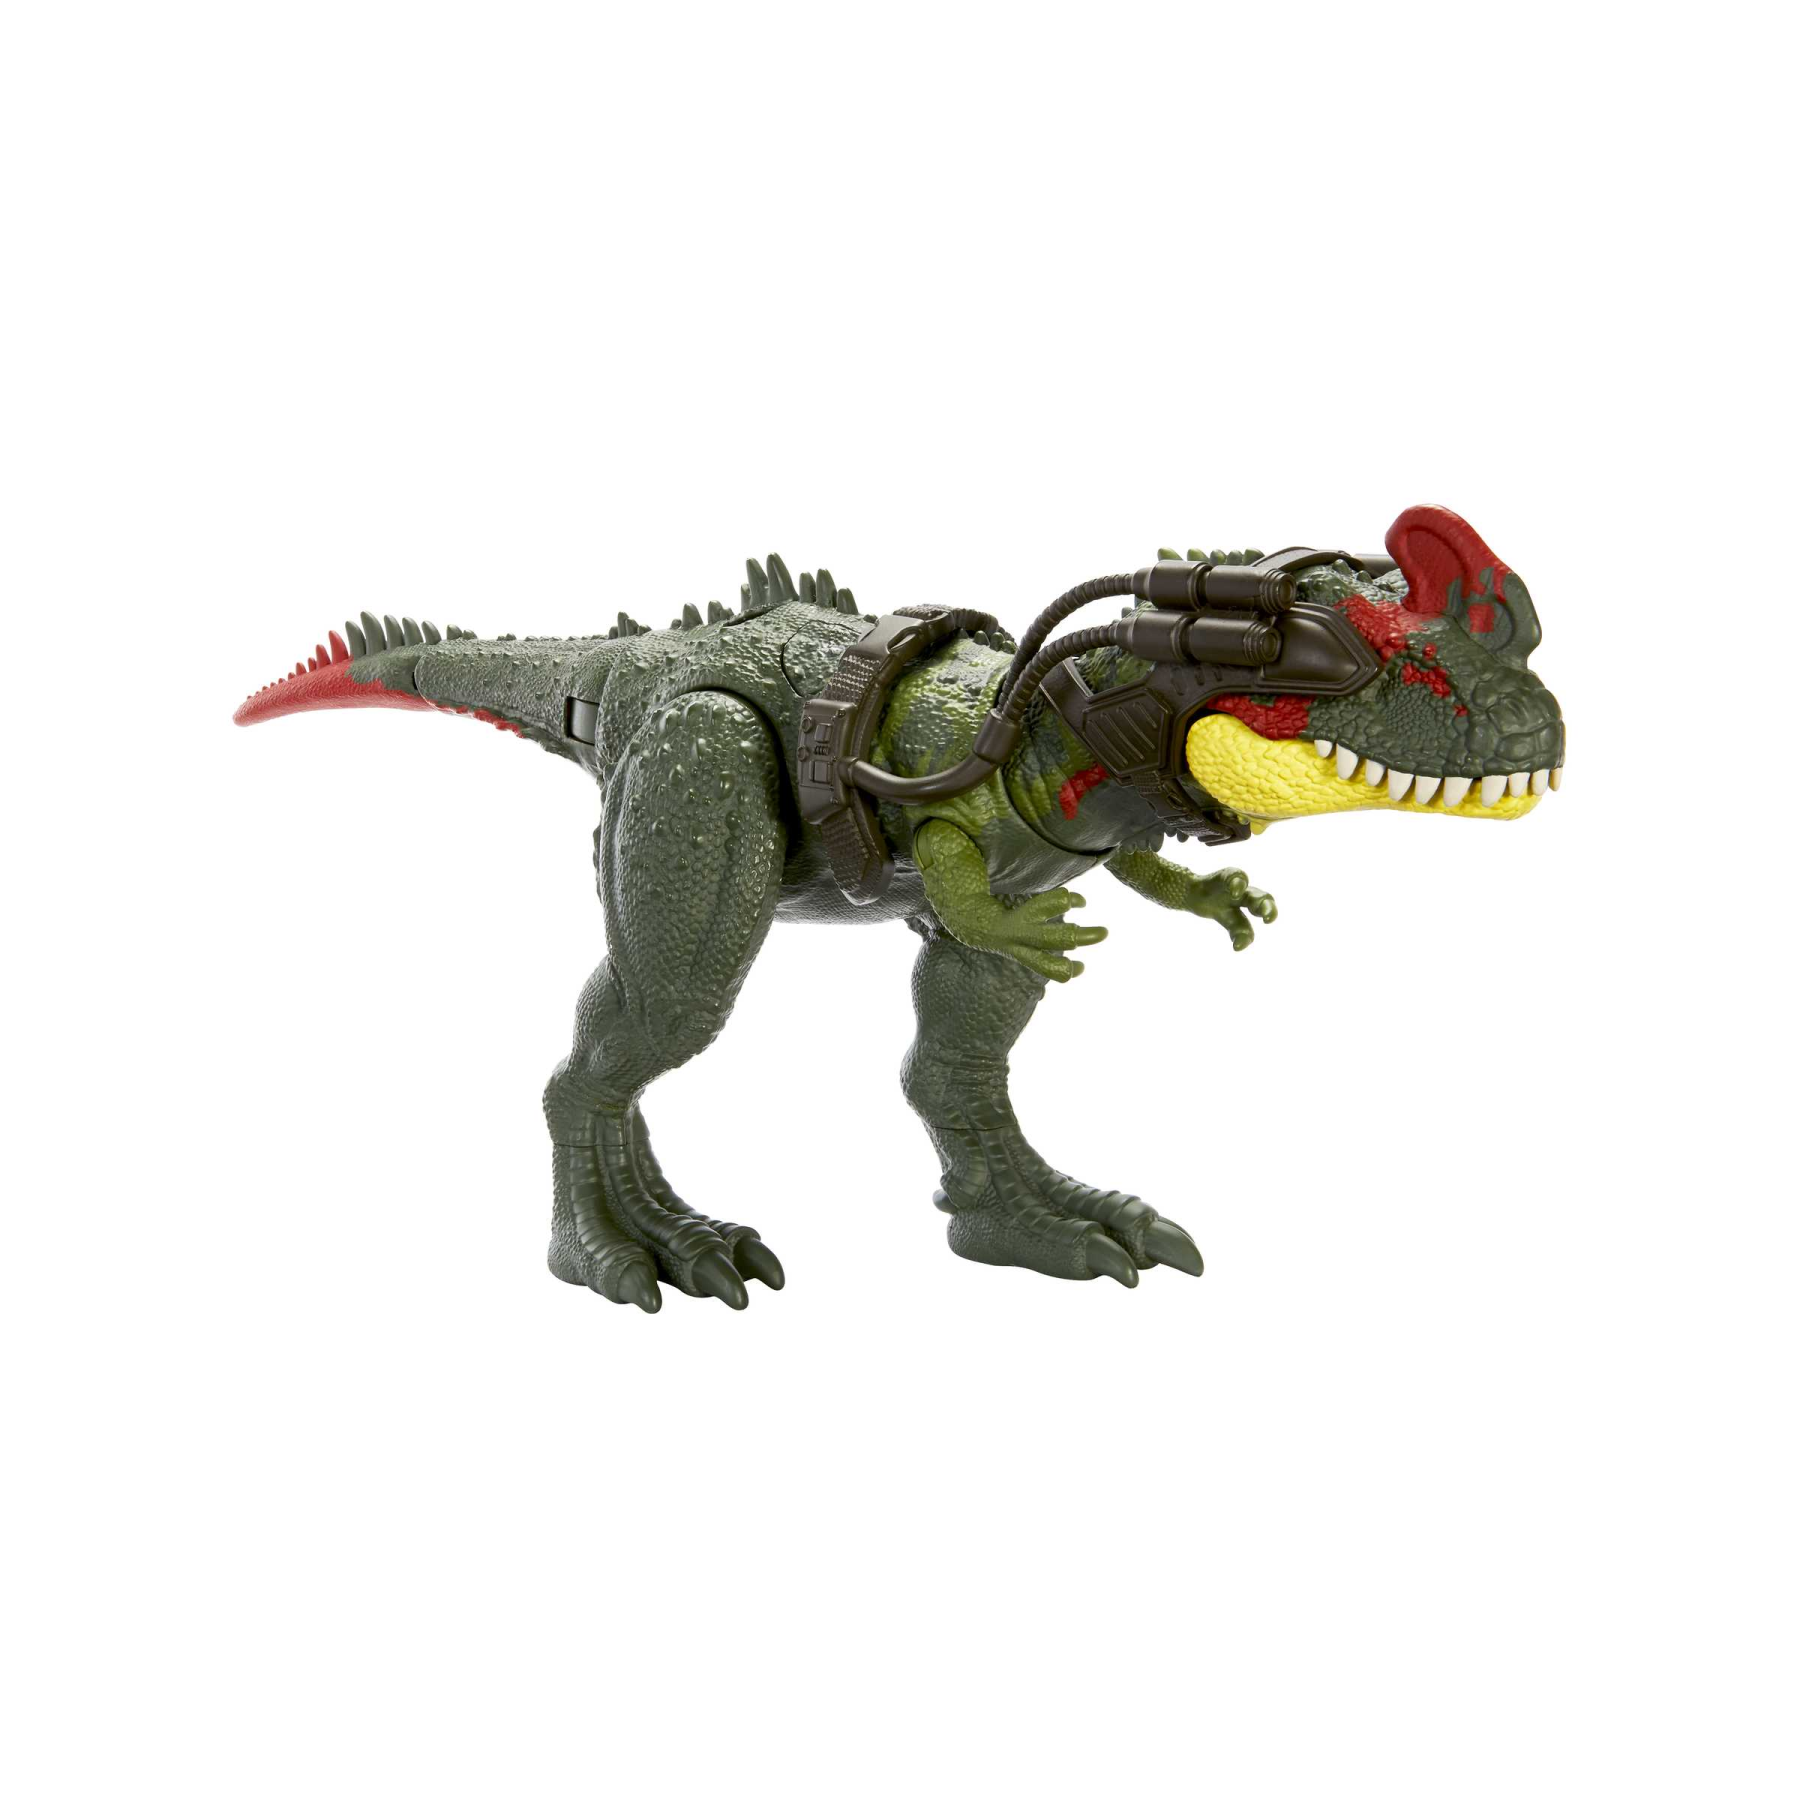 Jurassic world - predatori giganti, sinotiranno, dinosauro di grandi dimensioni con mossa d'attacco e kit di tracciamento, per il gioco classico e digitale, giocattolo, 4+ anni, hlp25 - Jurassic World